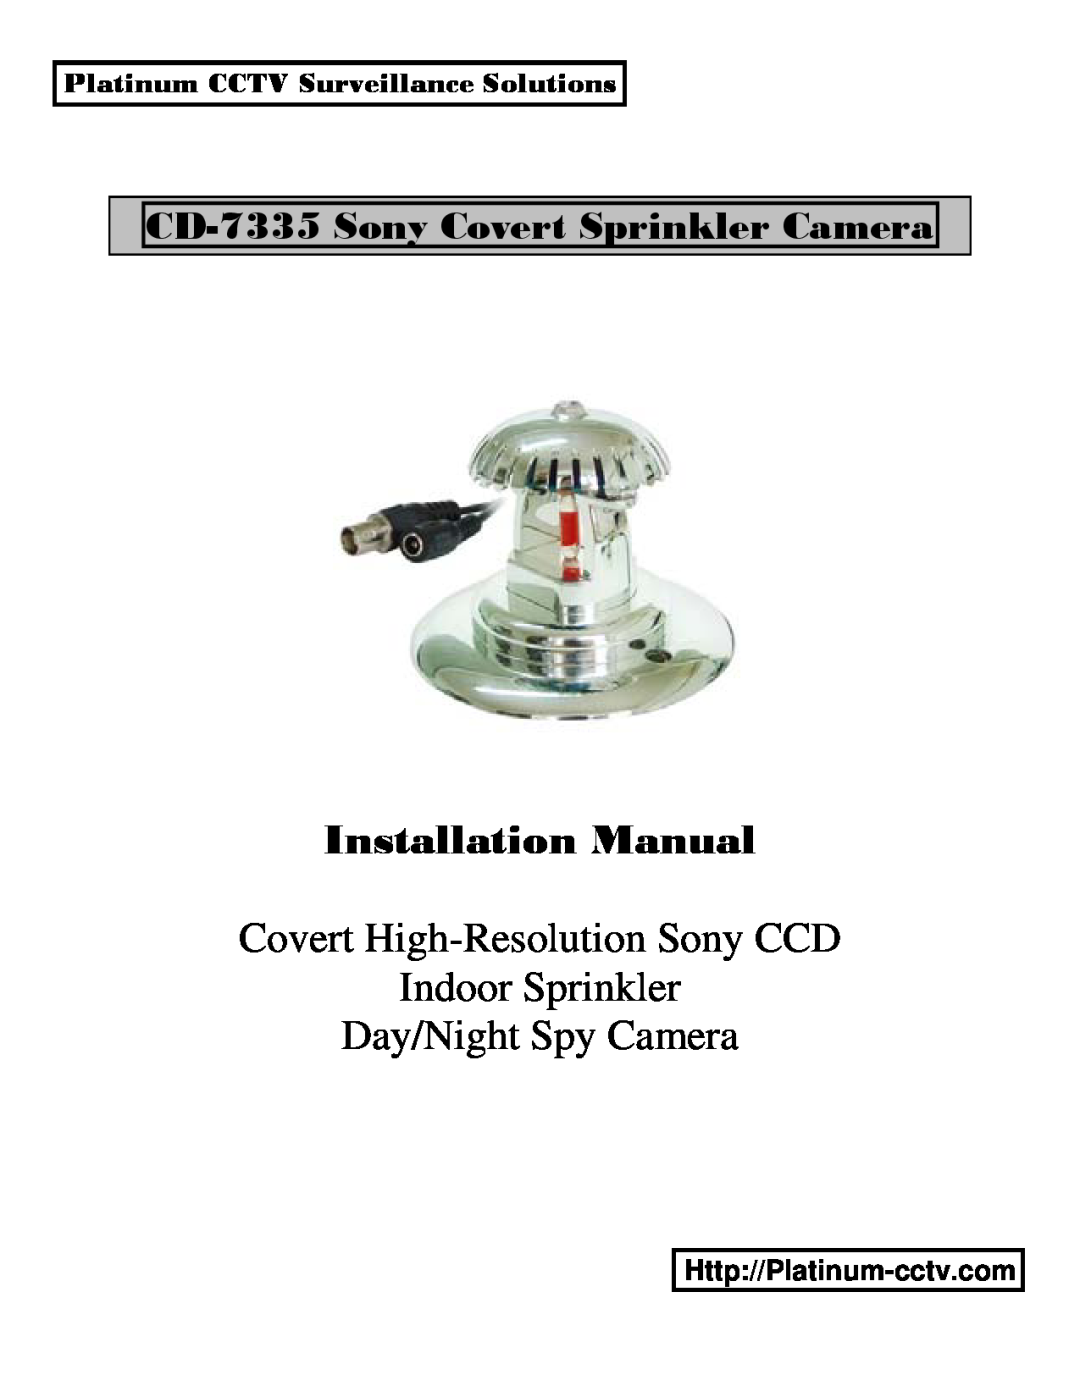 Sony CD-7335 installation manual Platinum CCTV Surveillance Solutions, Installation Manual, Day/Night Spy Camera 